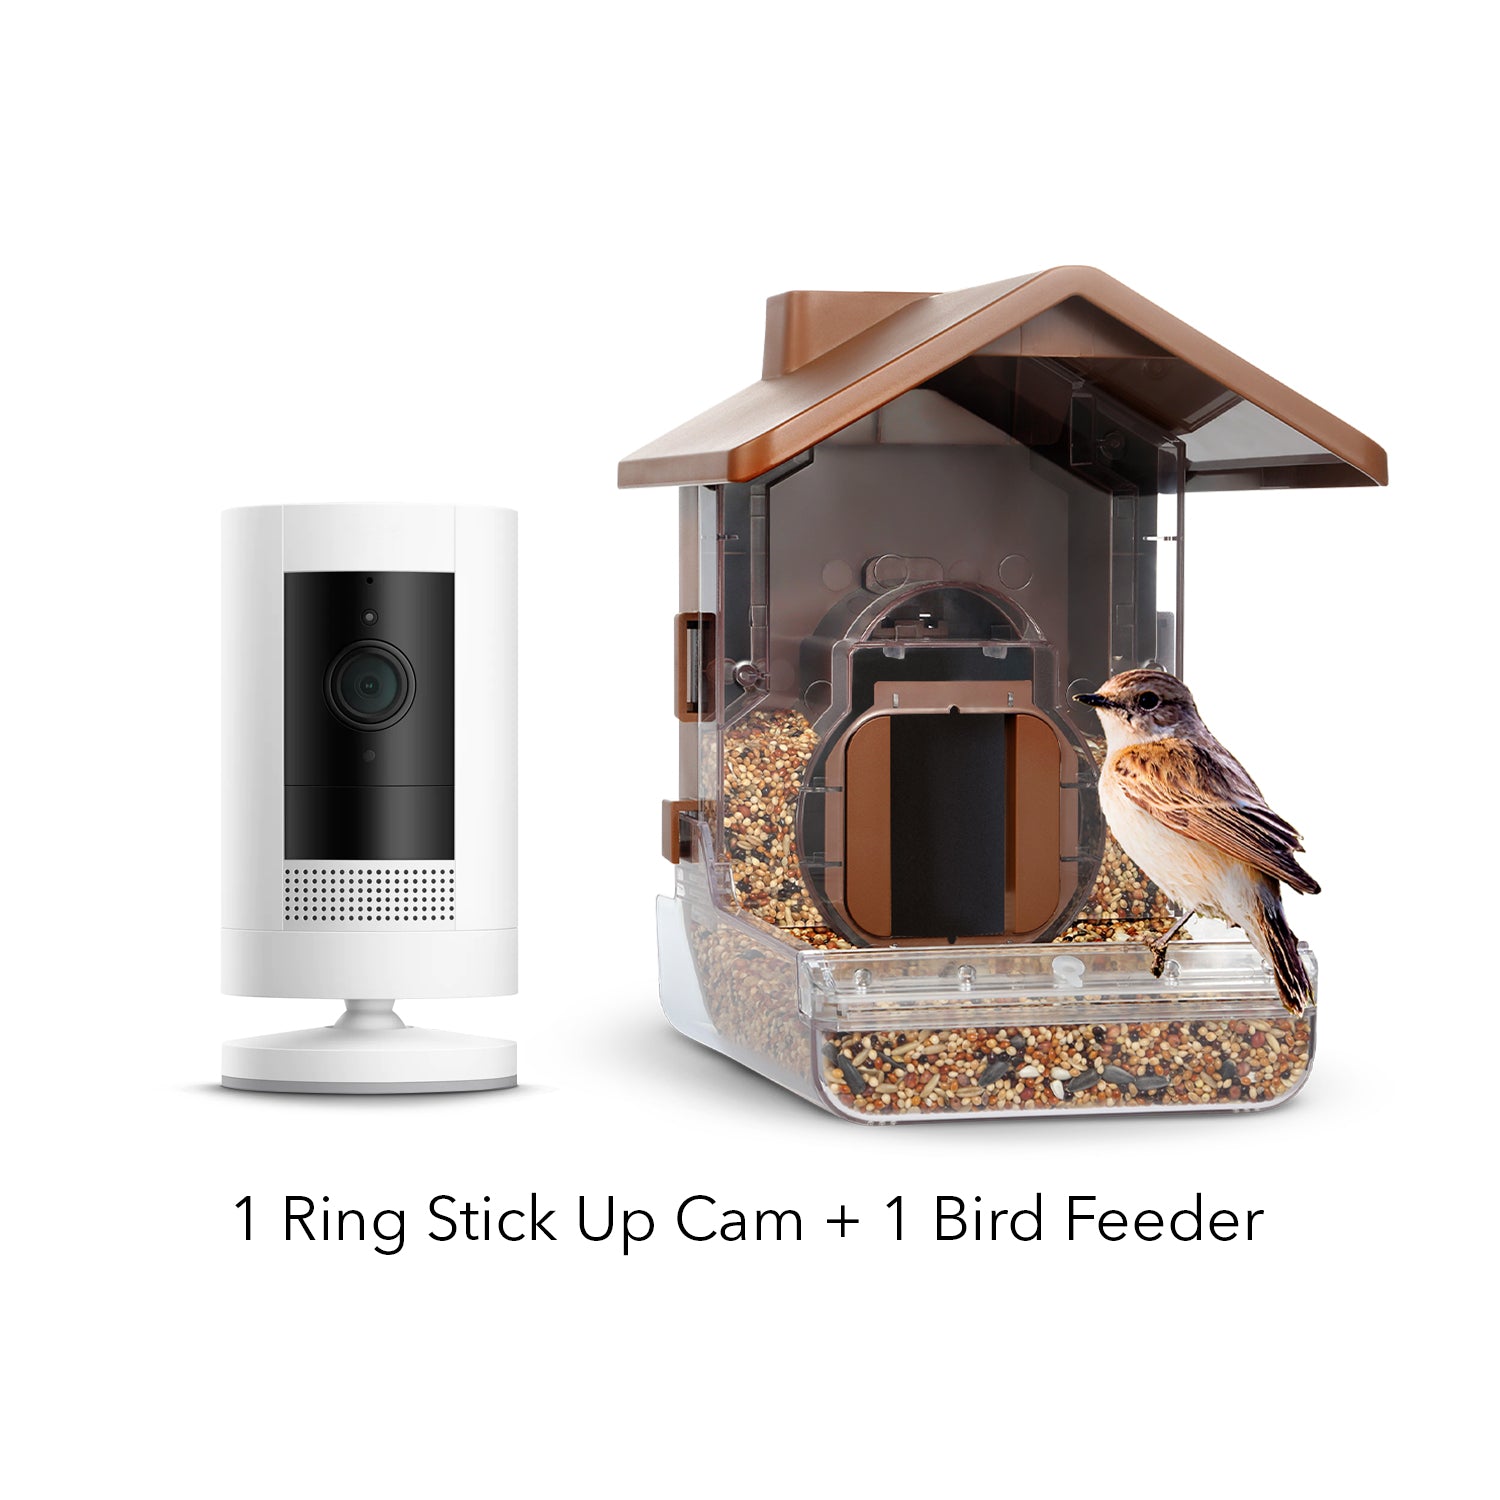 Ring Stick Up Cam Battery + Wasserstein Bird Feeder Camera Case Bundle